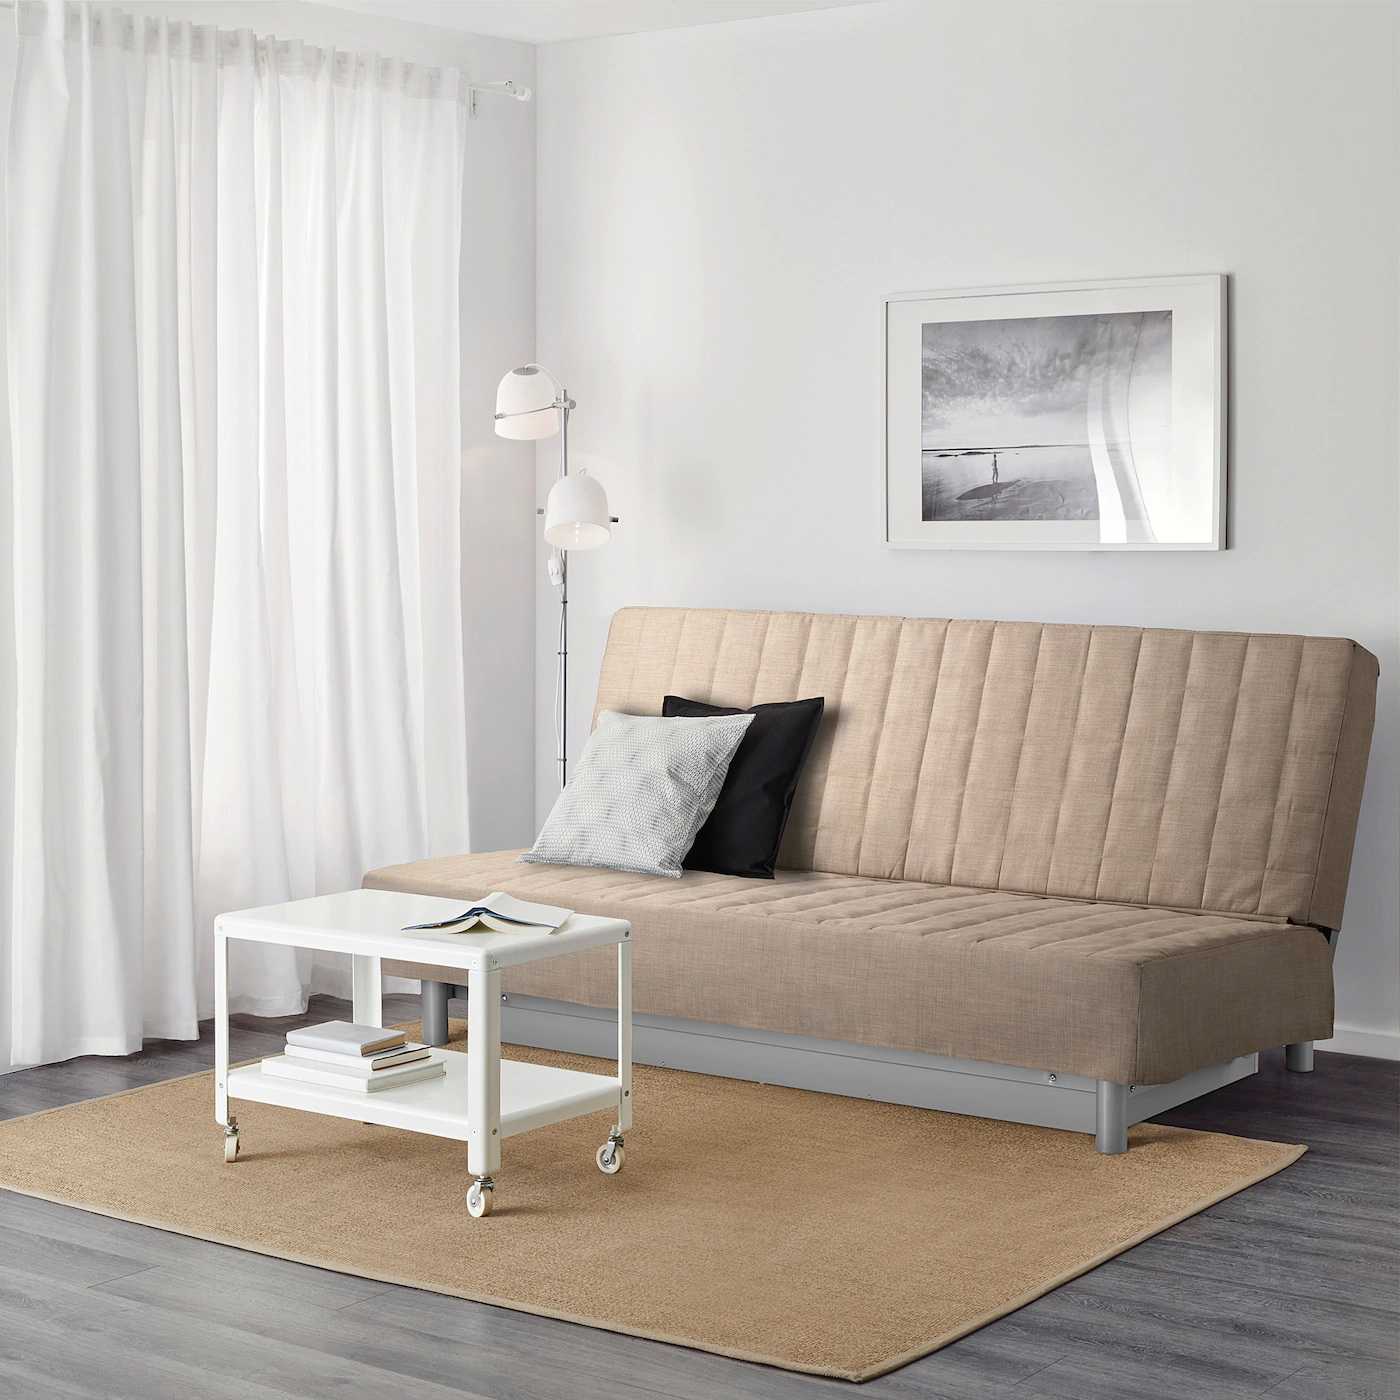 Популярный диван-кровать бединге от икеа: разбор плюсов и минусов